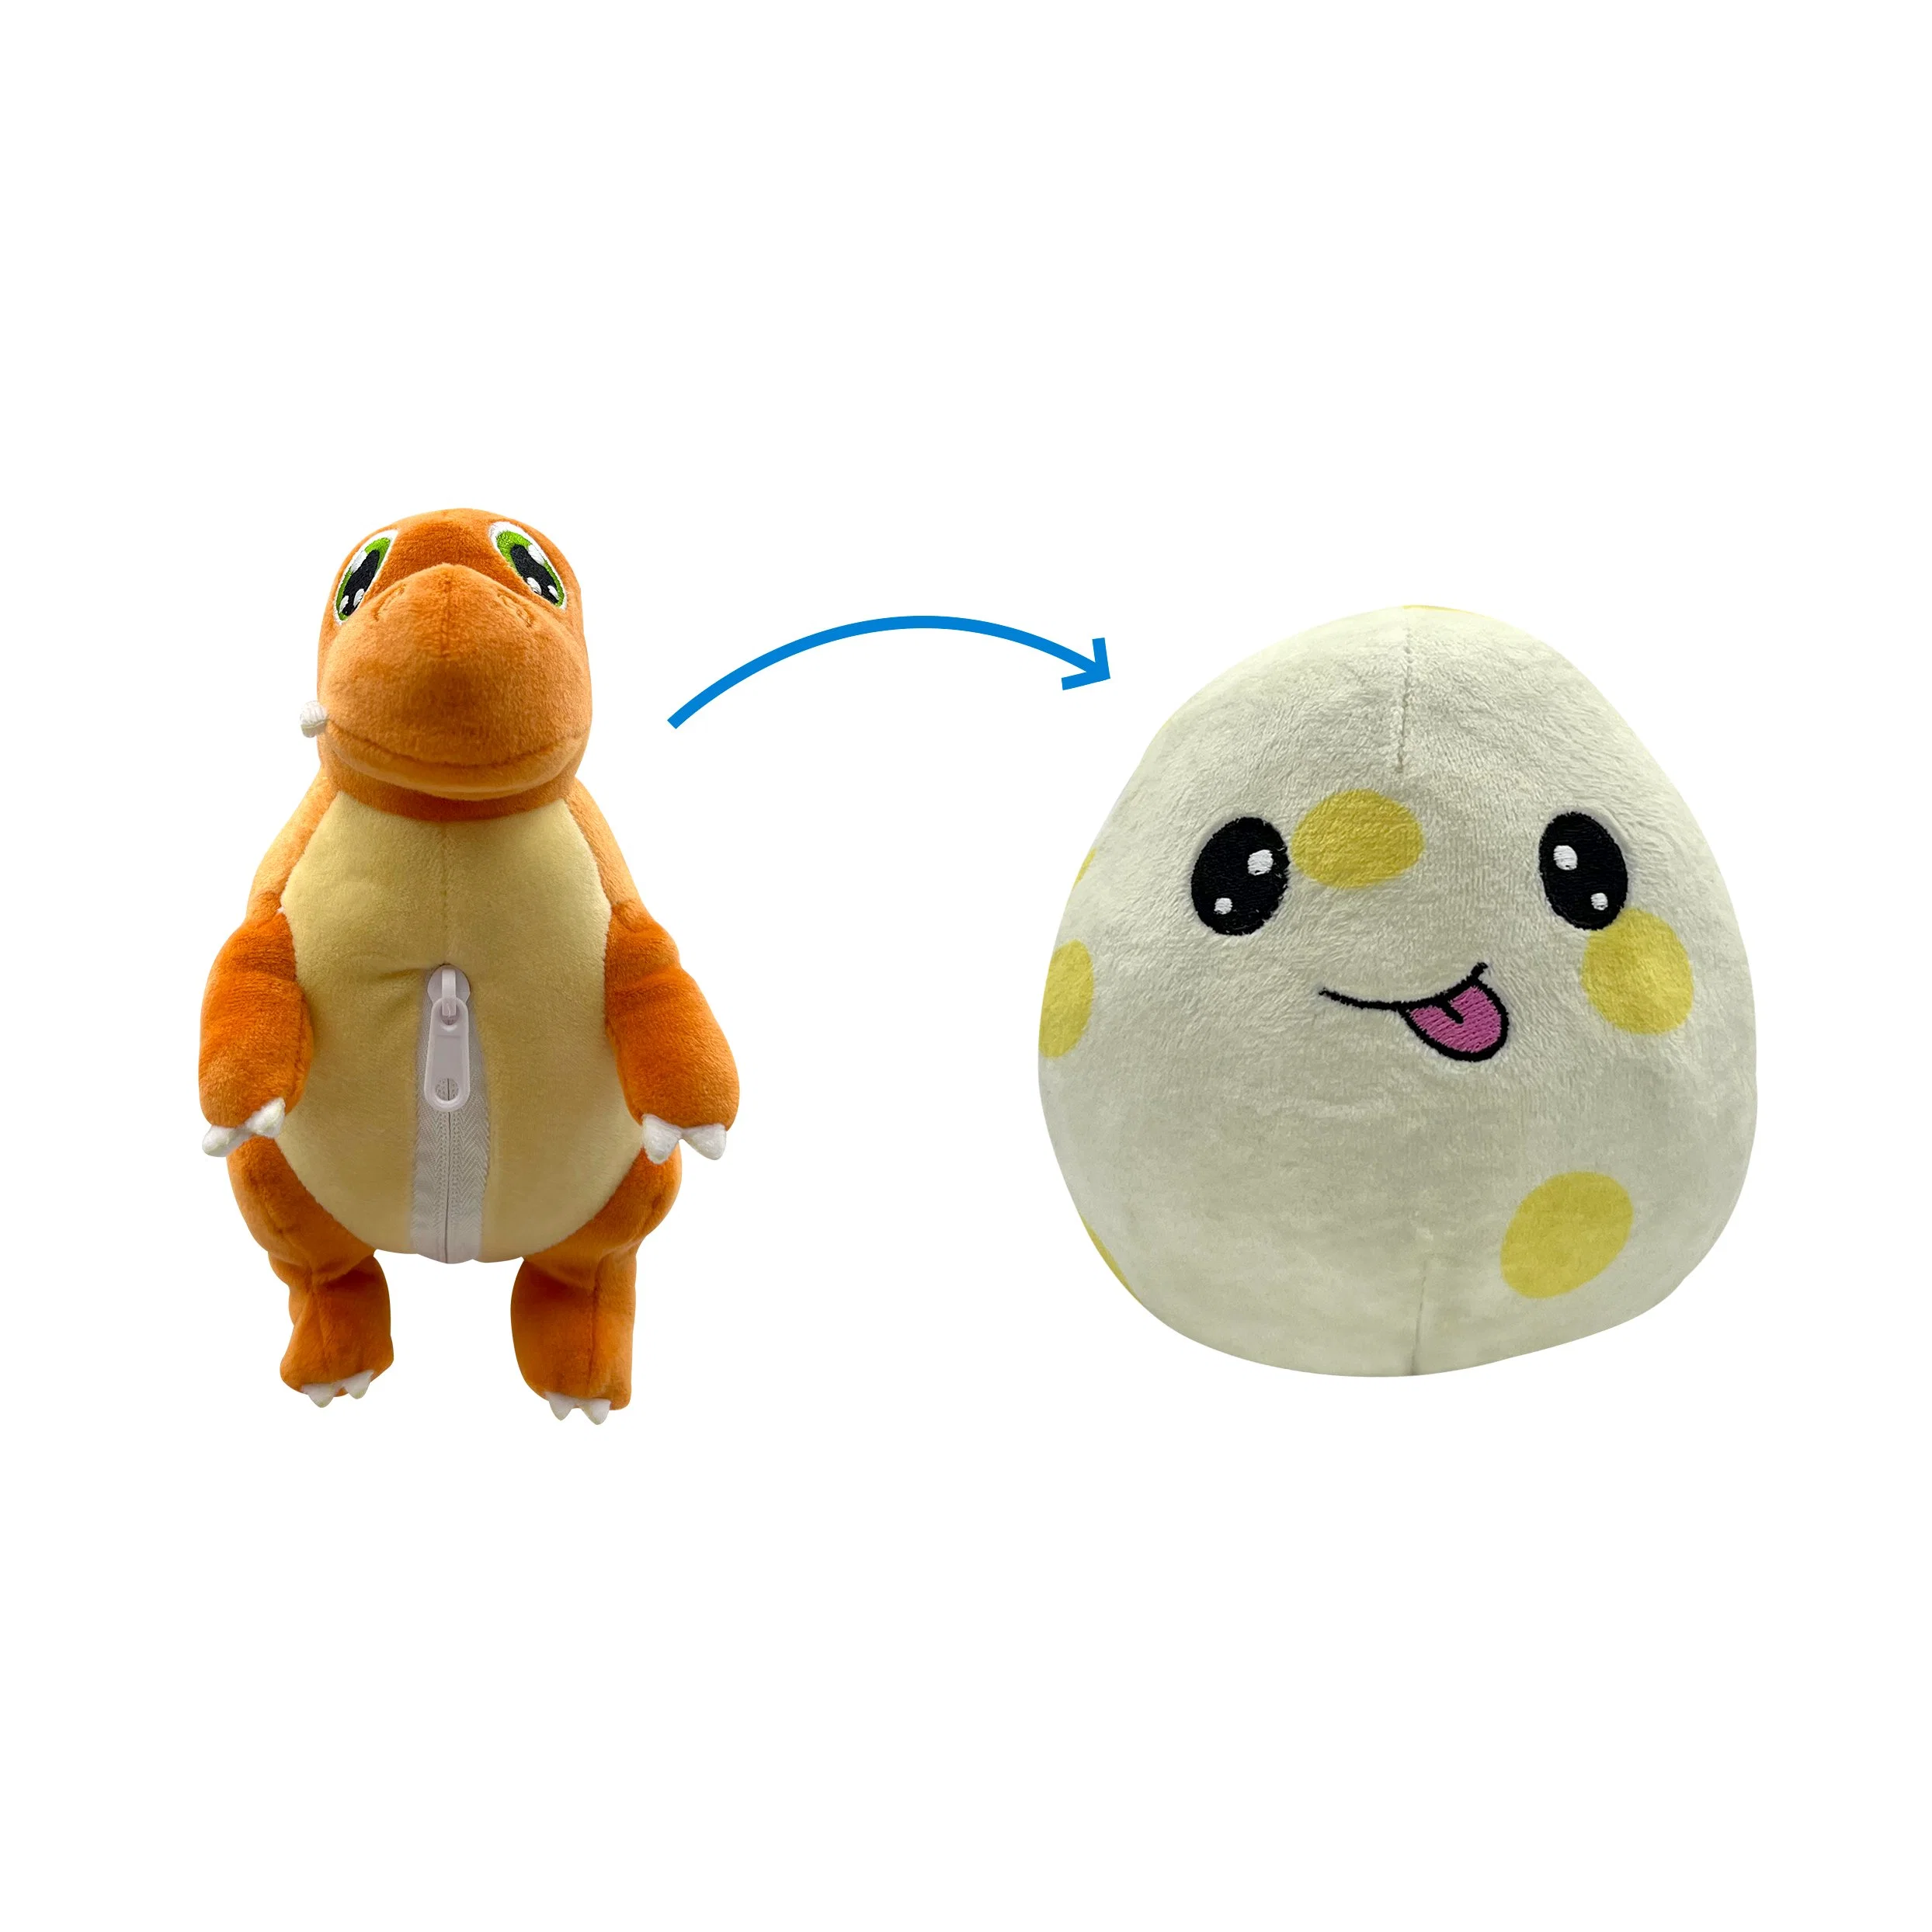 Плюш-игрушка Easter Egg Dinosaur игрушка с набёром для детей подарок